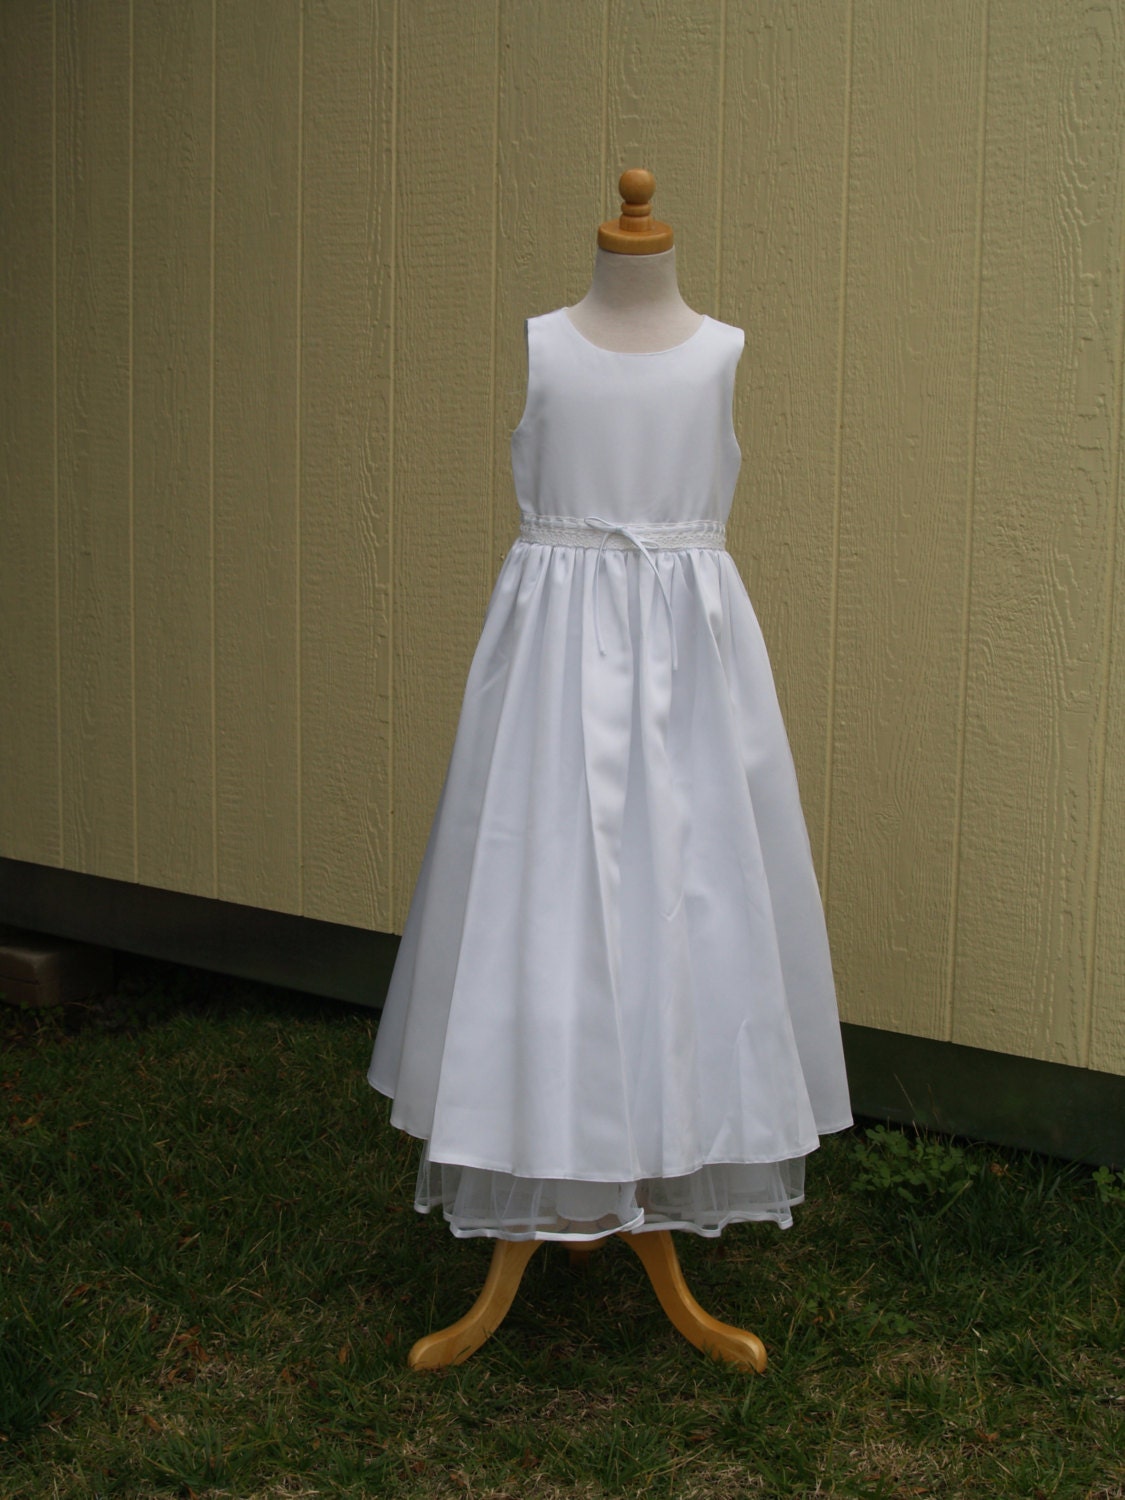 White Communion Dress Us Size 6, Flower Girl Size6 Full Length, Satin Sleeveless Fullskirt Dress, Lace Dress Elegant, White Bow